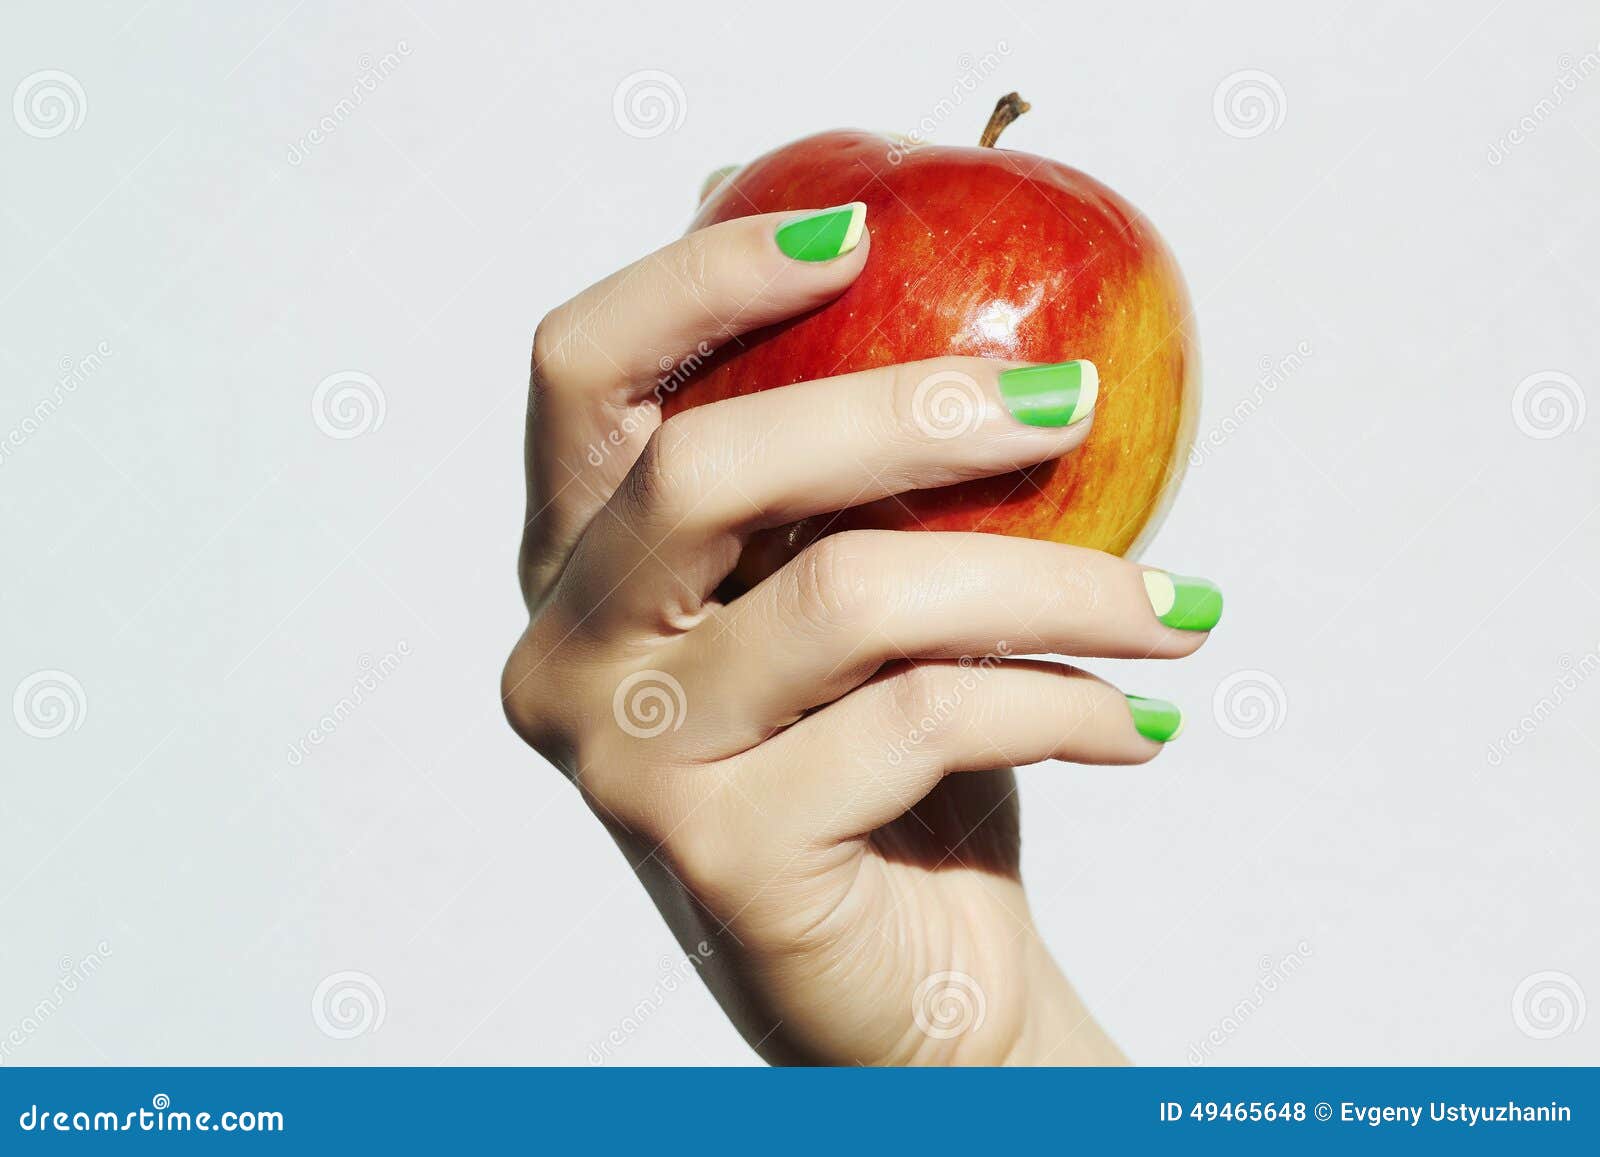 Яблоко в женской руке